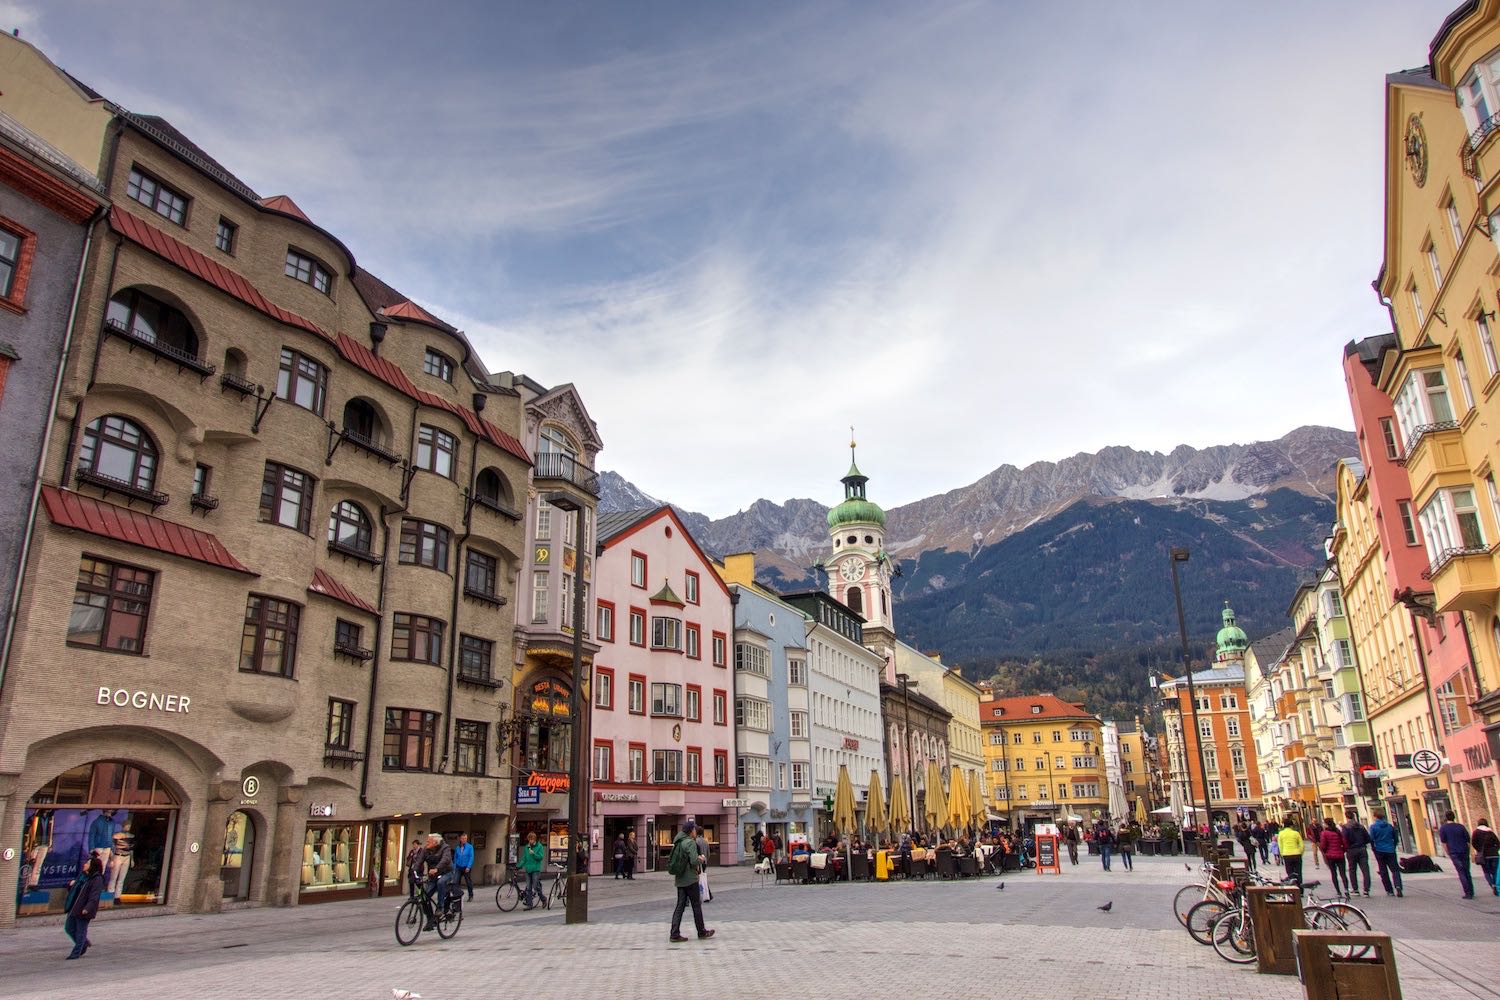  Innsbruck, Austria 